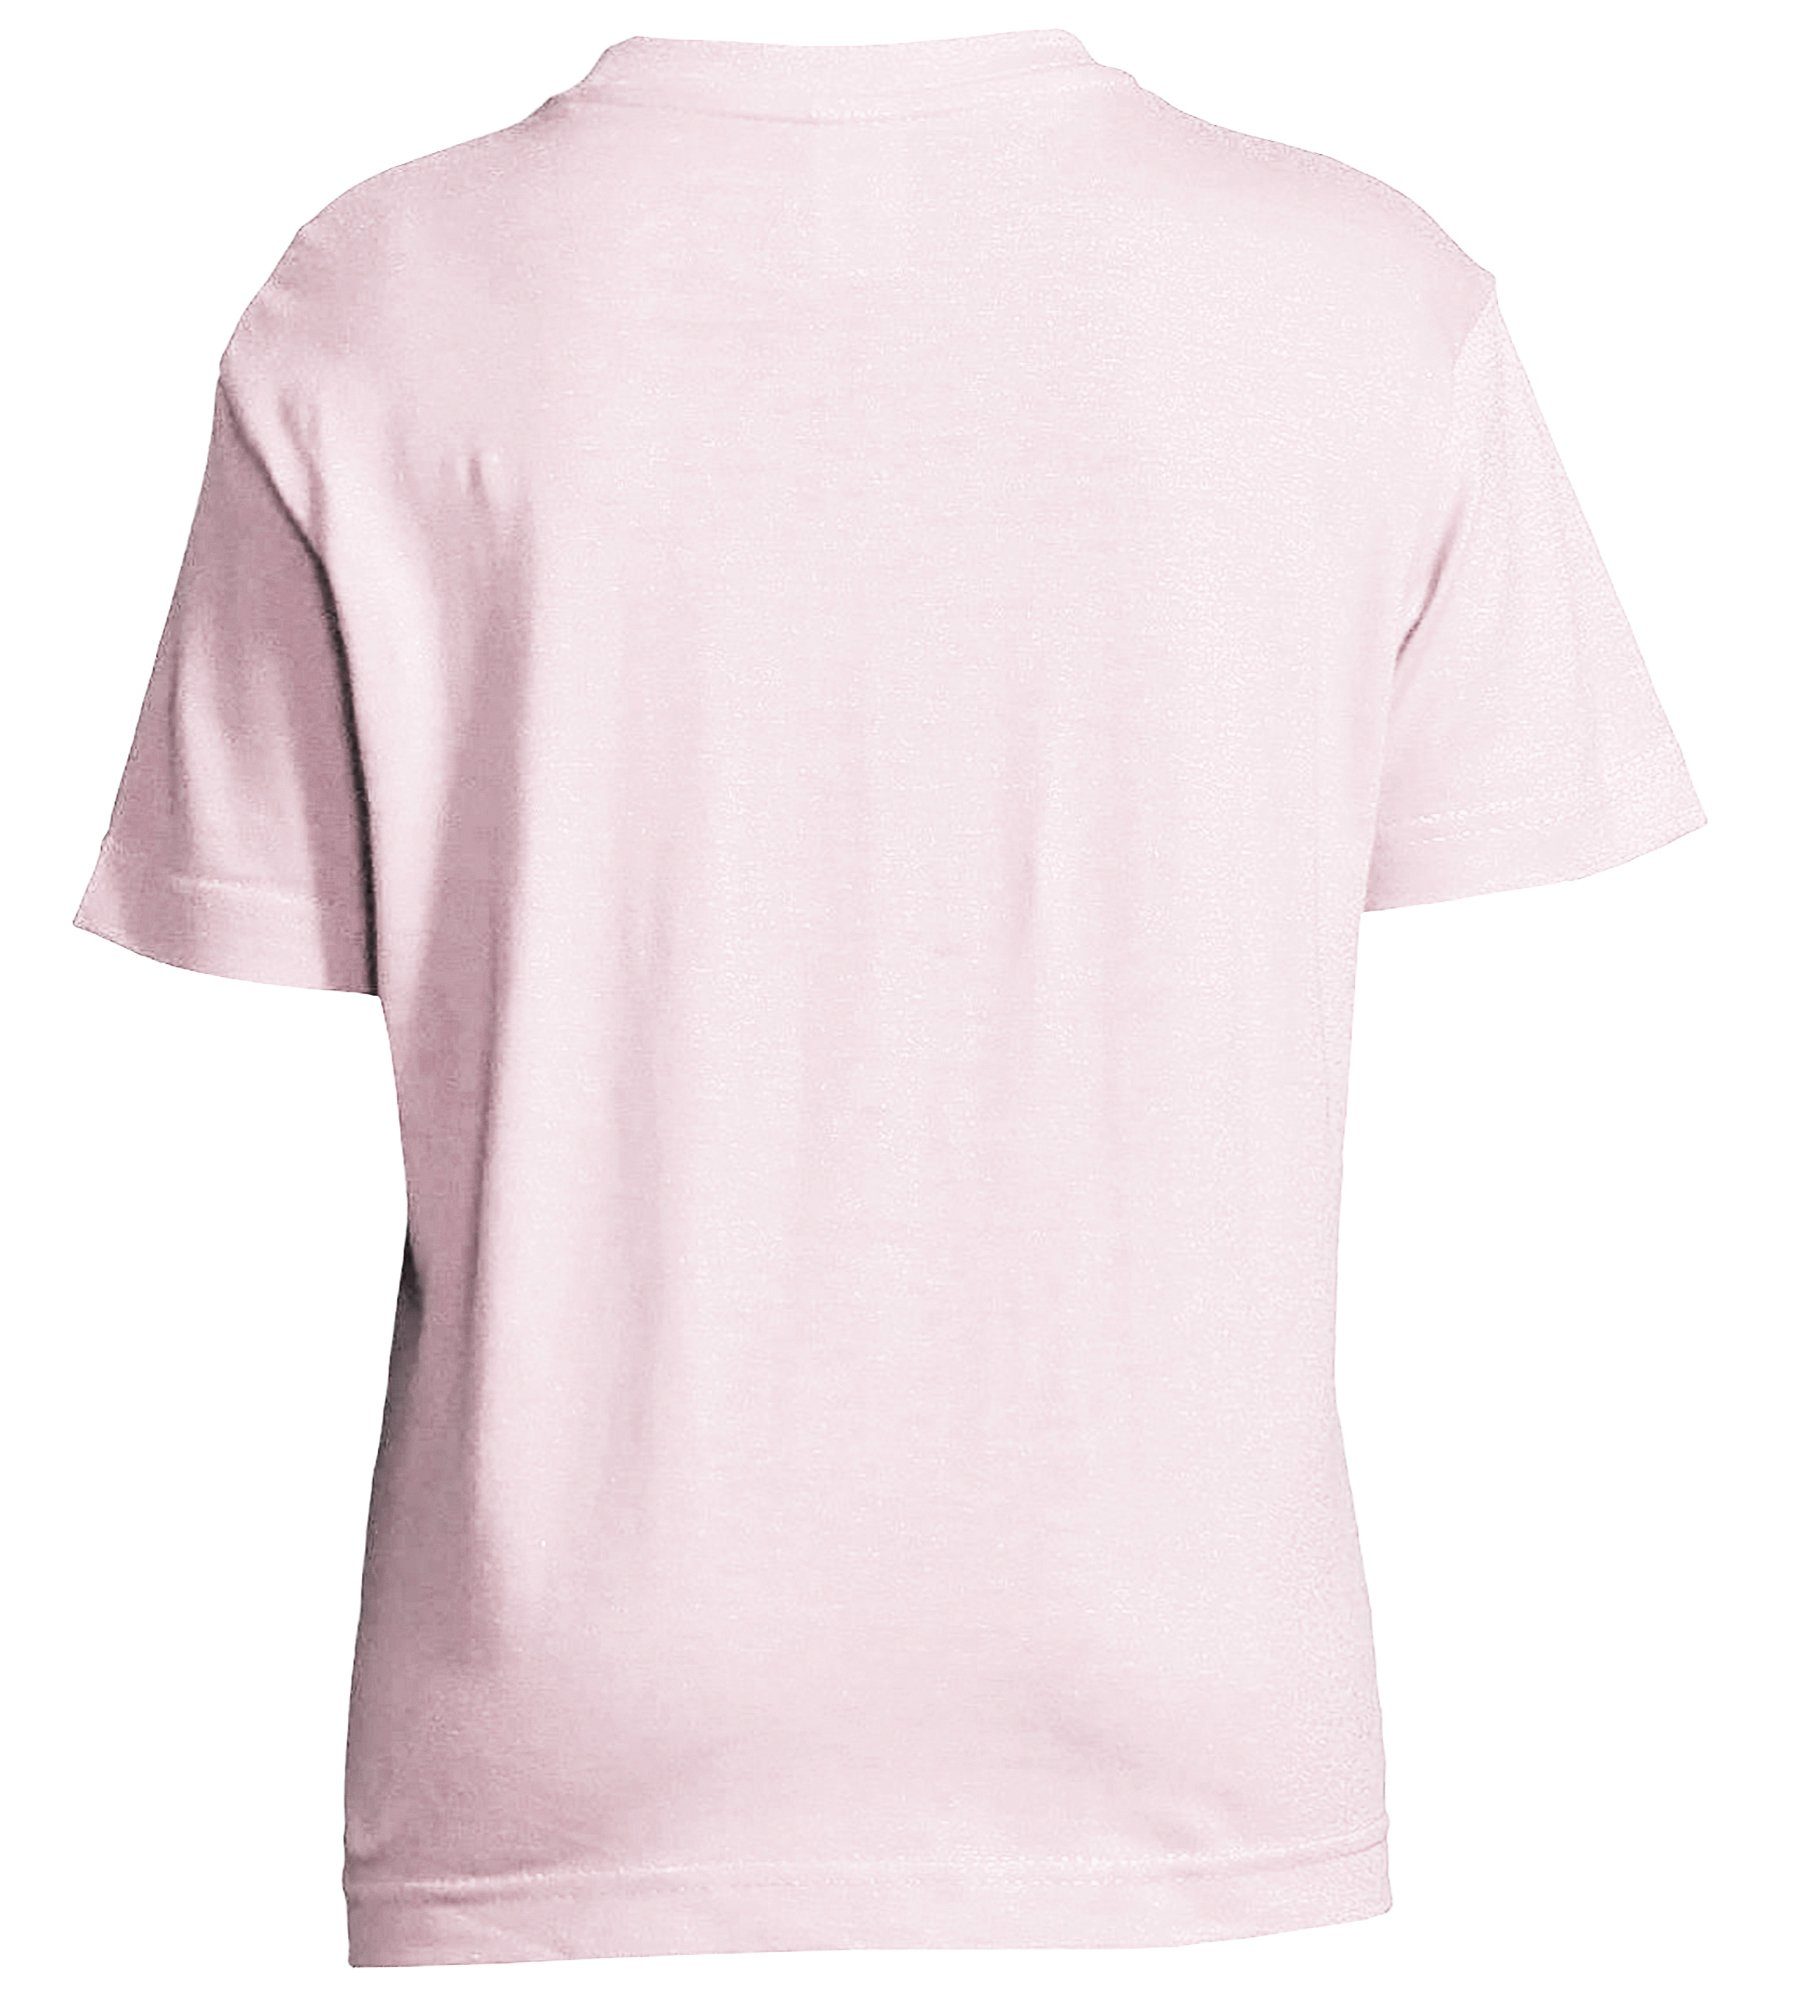 MyDesign24 Print-Shirt bedrucktes Mädchen T-Shirt Aufdruck, Baumwollshirt Silhouette i146 stehende mit Pferde rosa